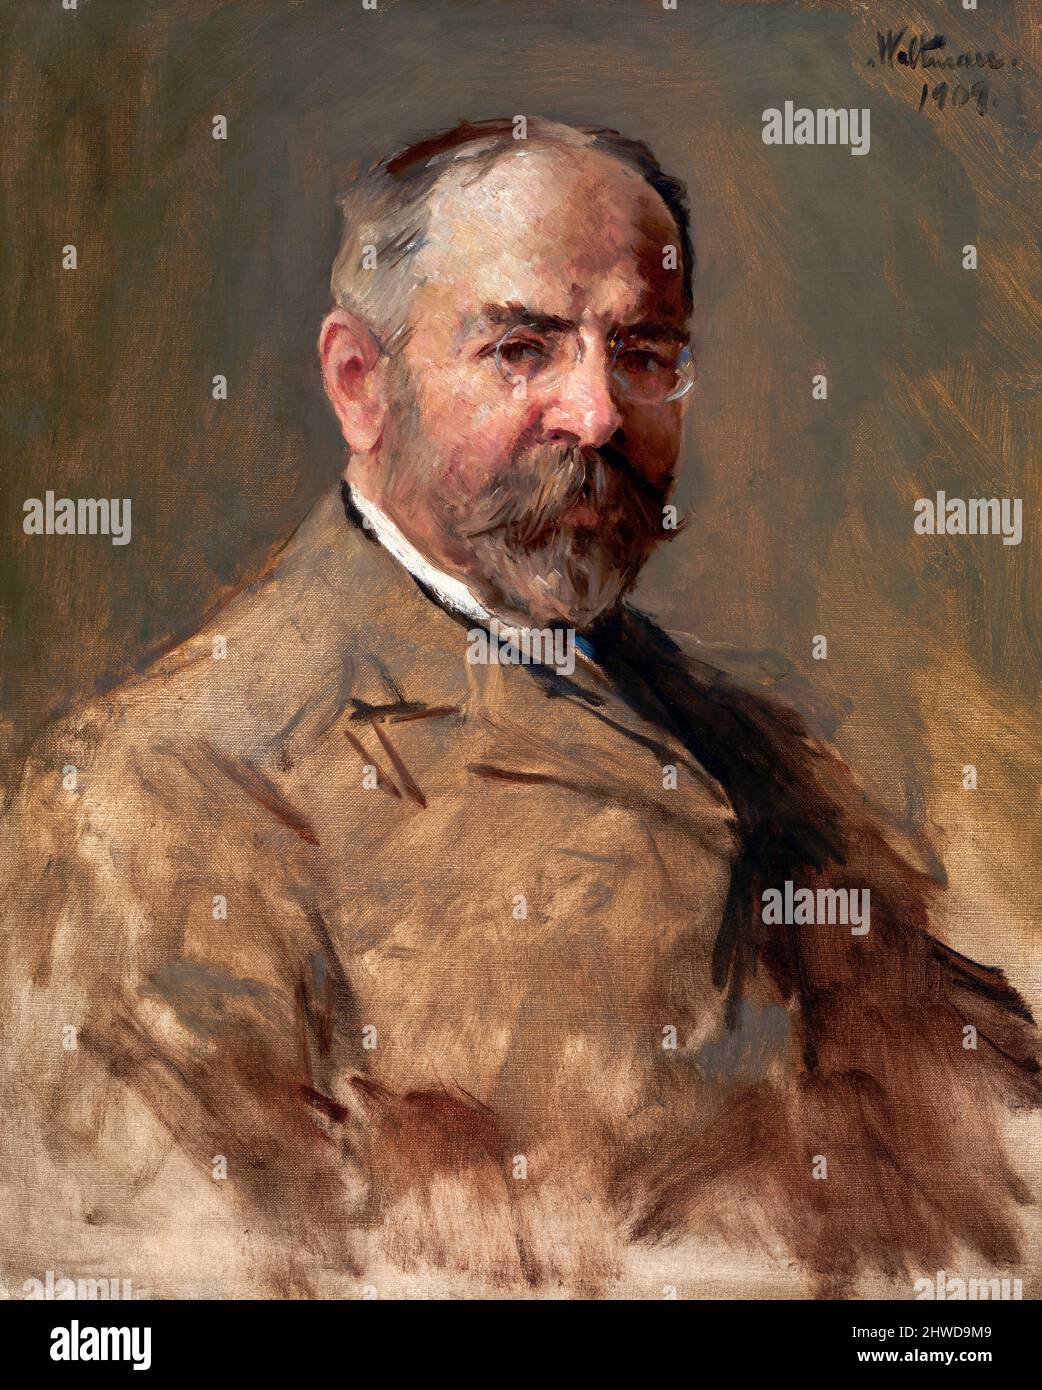 Porträt des amerikanischen Komponisten und Dirigenten John Philip Sousa (1854-1932) von Harry Franklin Waltman, Öl auf Leinwand, 1909 Stockfoto